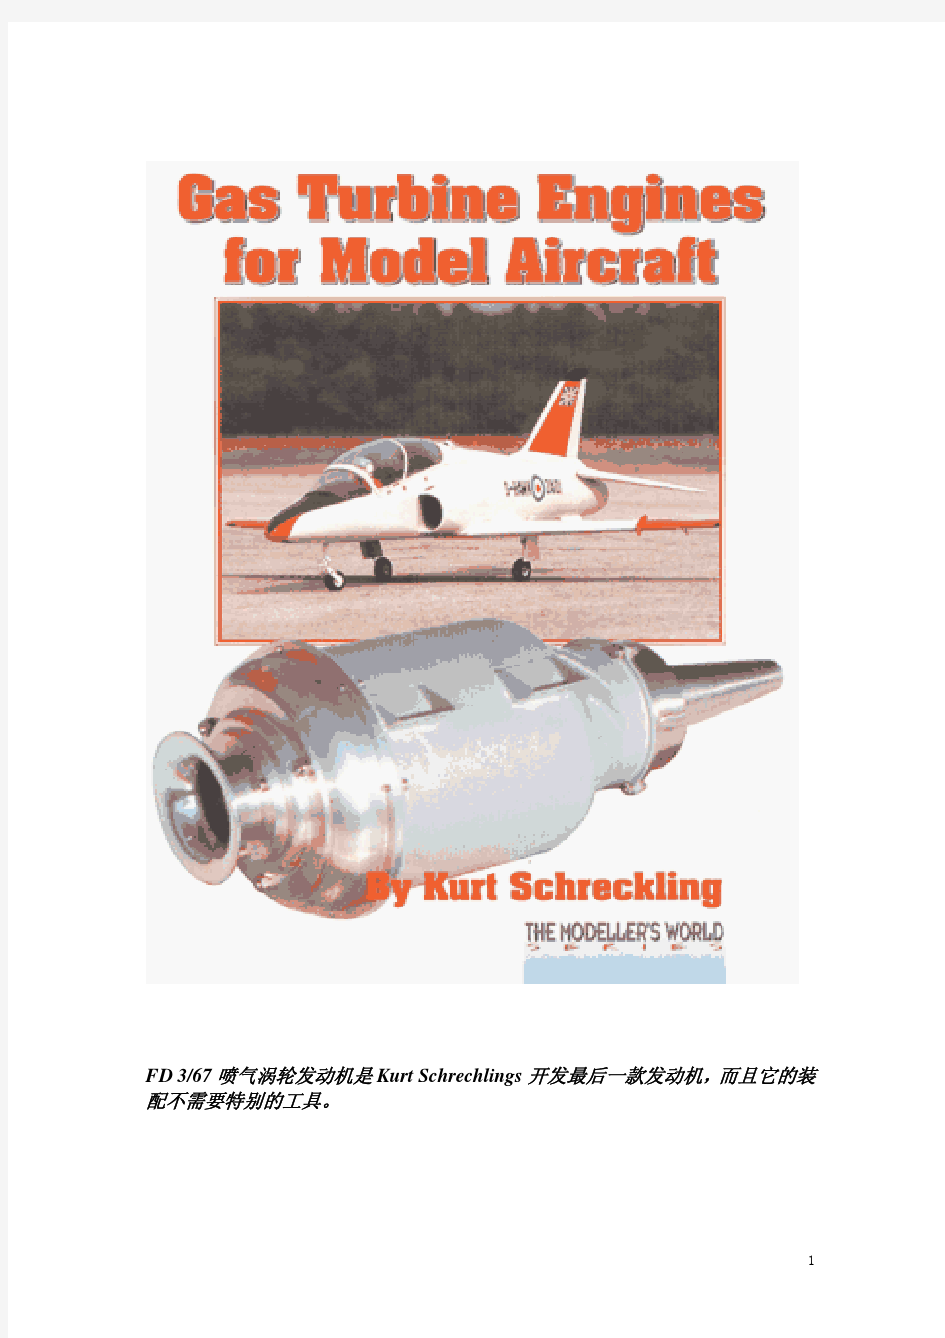 FD3-67涡轮喷气发动机图纸 (Gas.Turbine.Engines.for.Model.Aircraft).Kurt.Schreckling